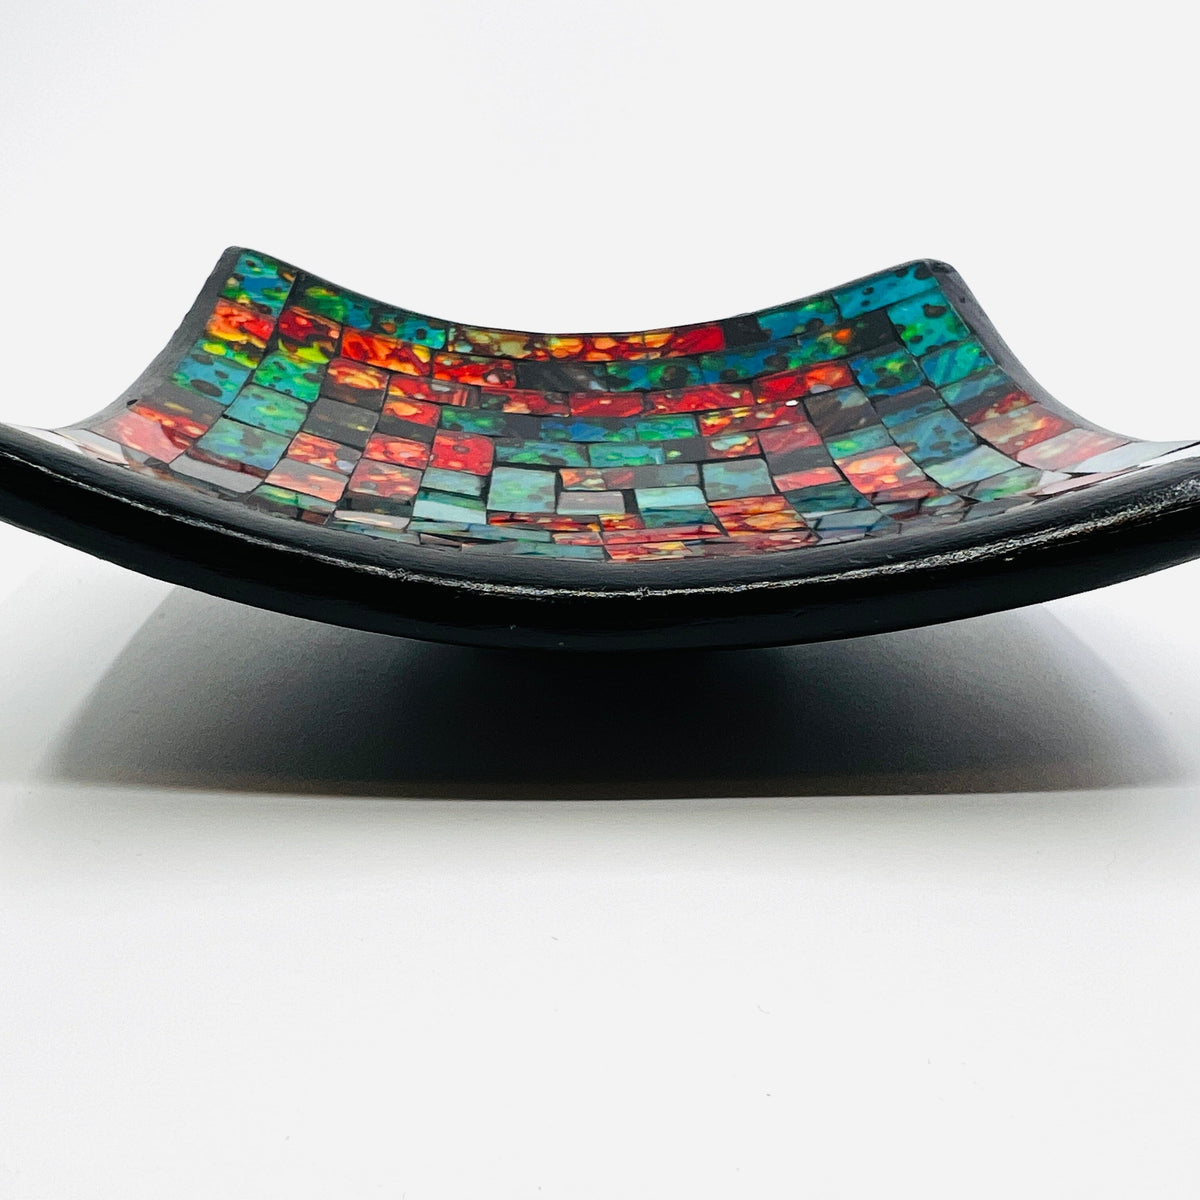 Mosaic Glass Plates & Bowls at Rustic ⋆ Blowing Rock